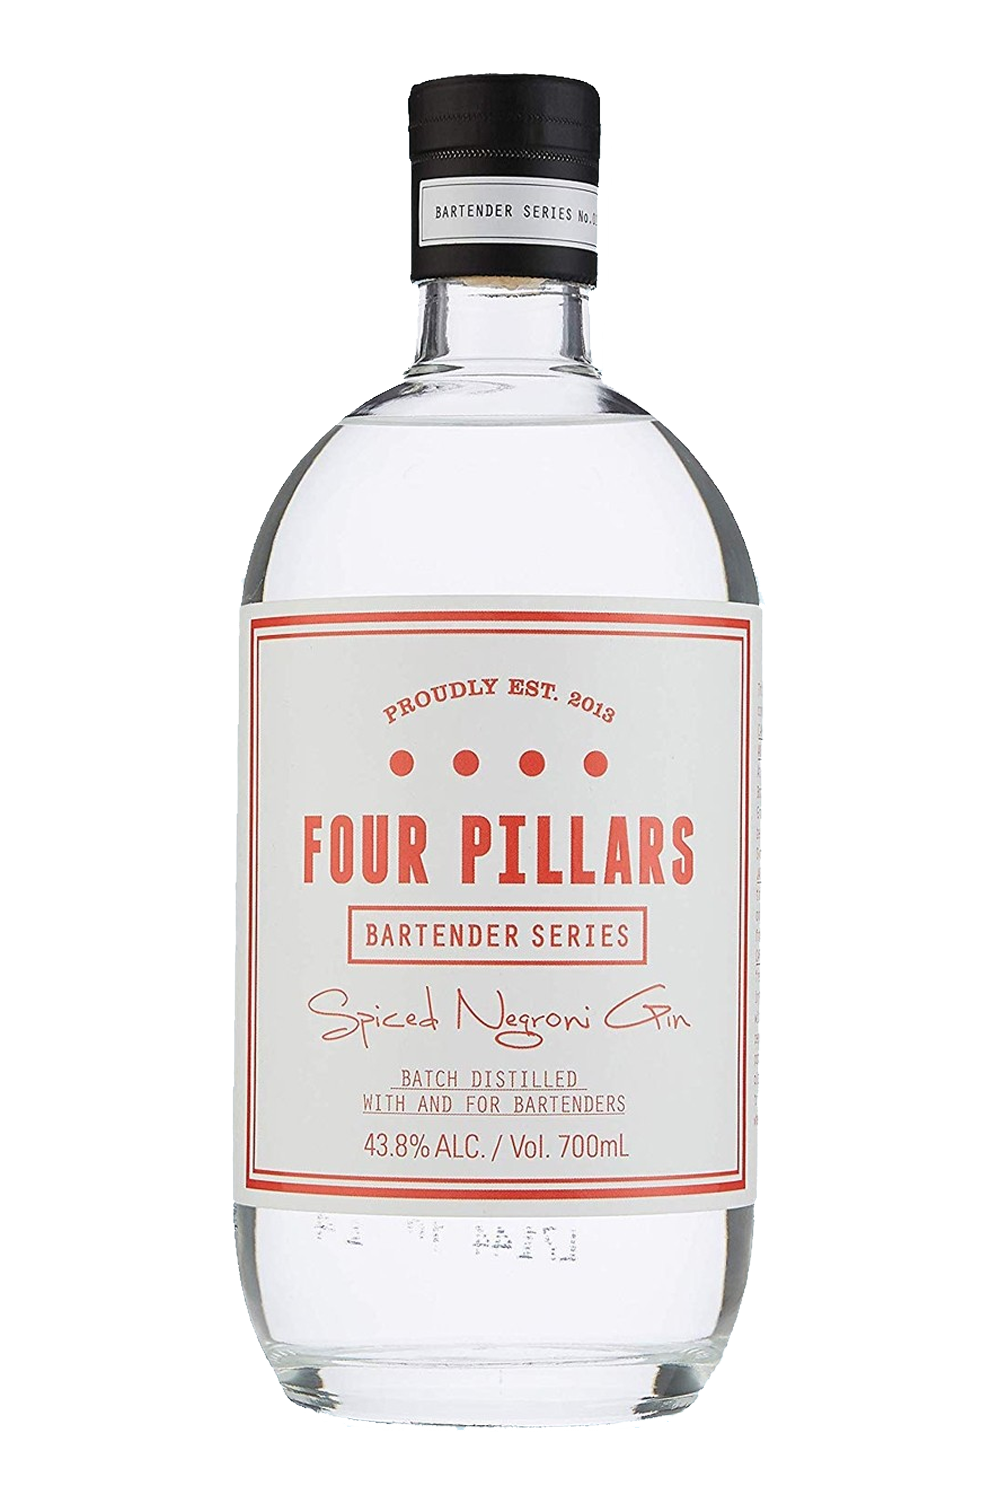 Rượu Four Pillars Spiced Negroni Gin 1x700ml 43,8%